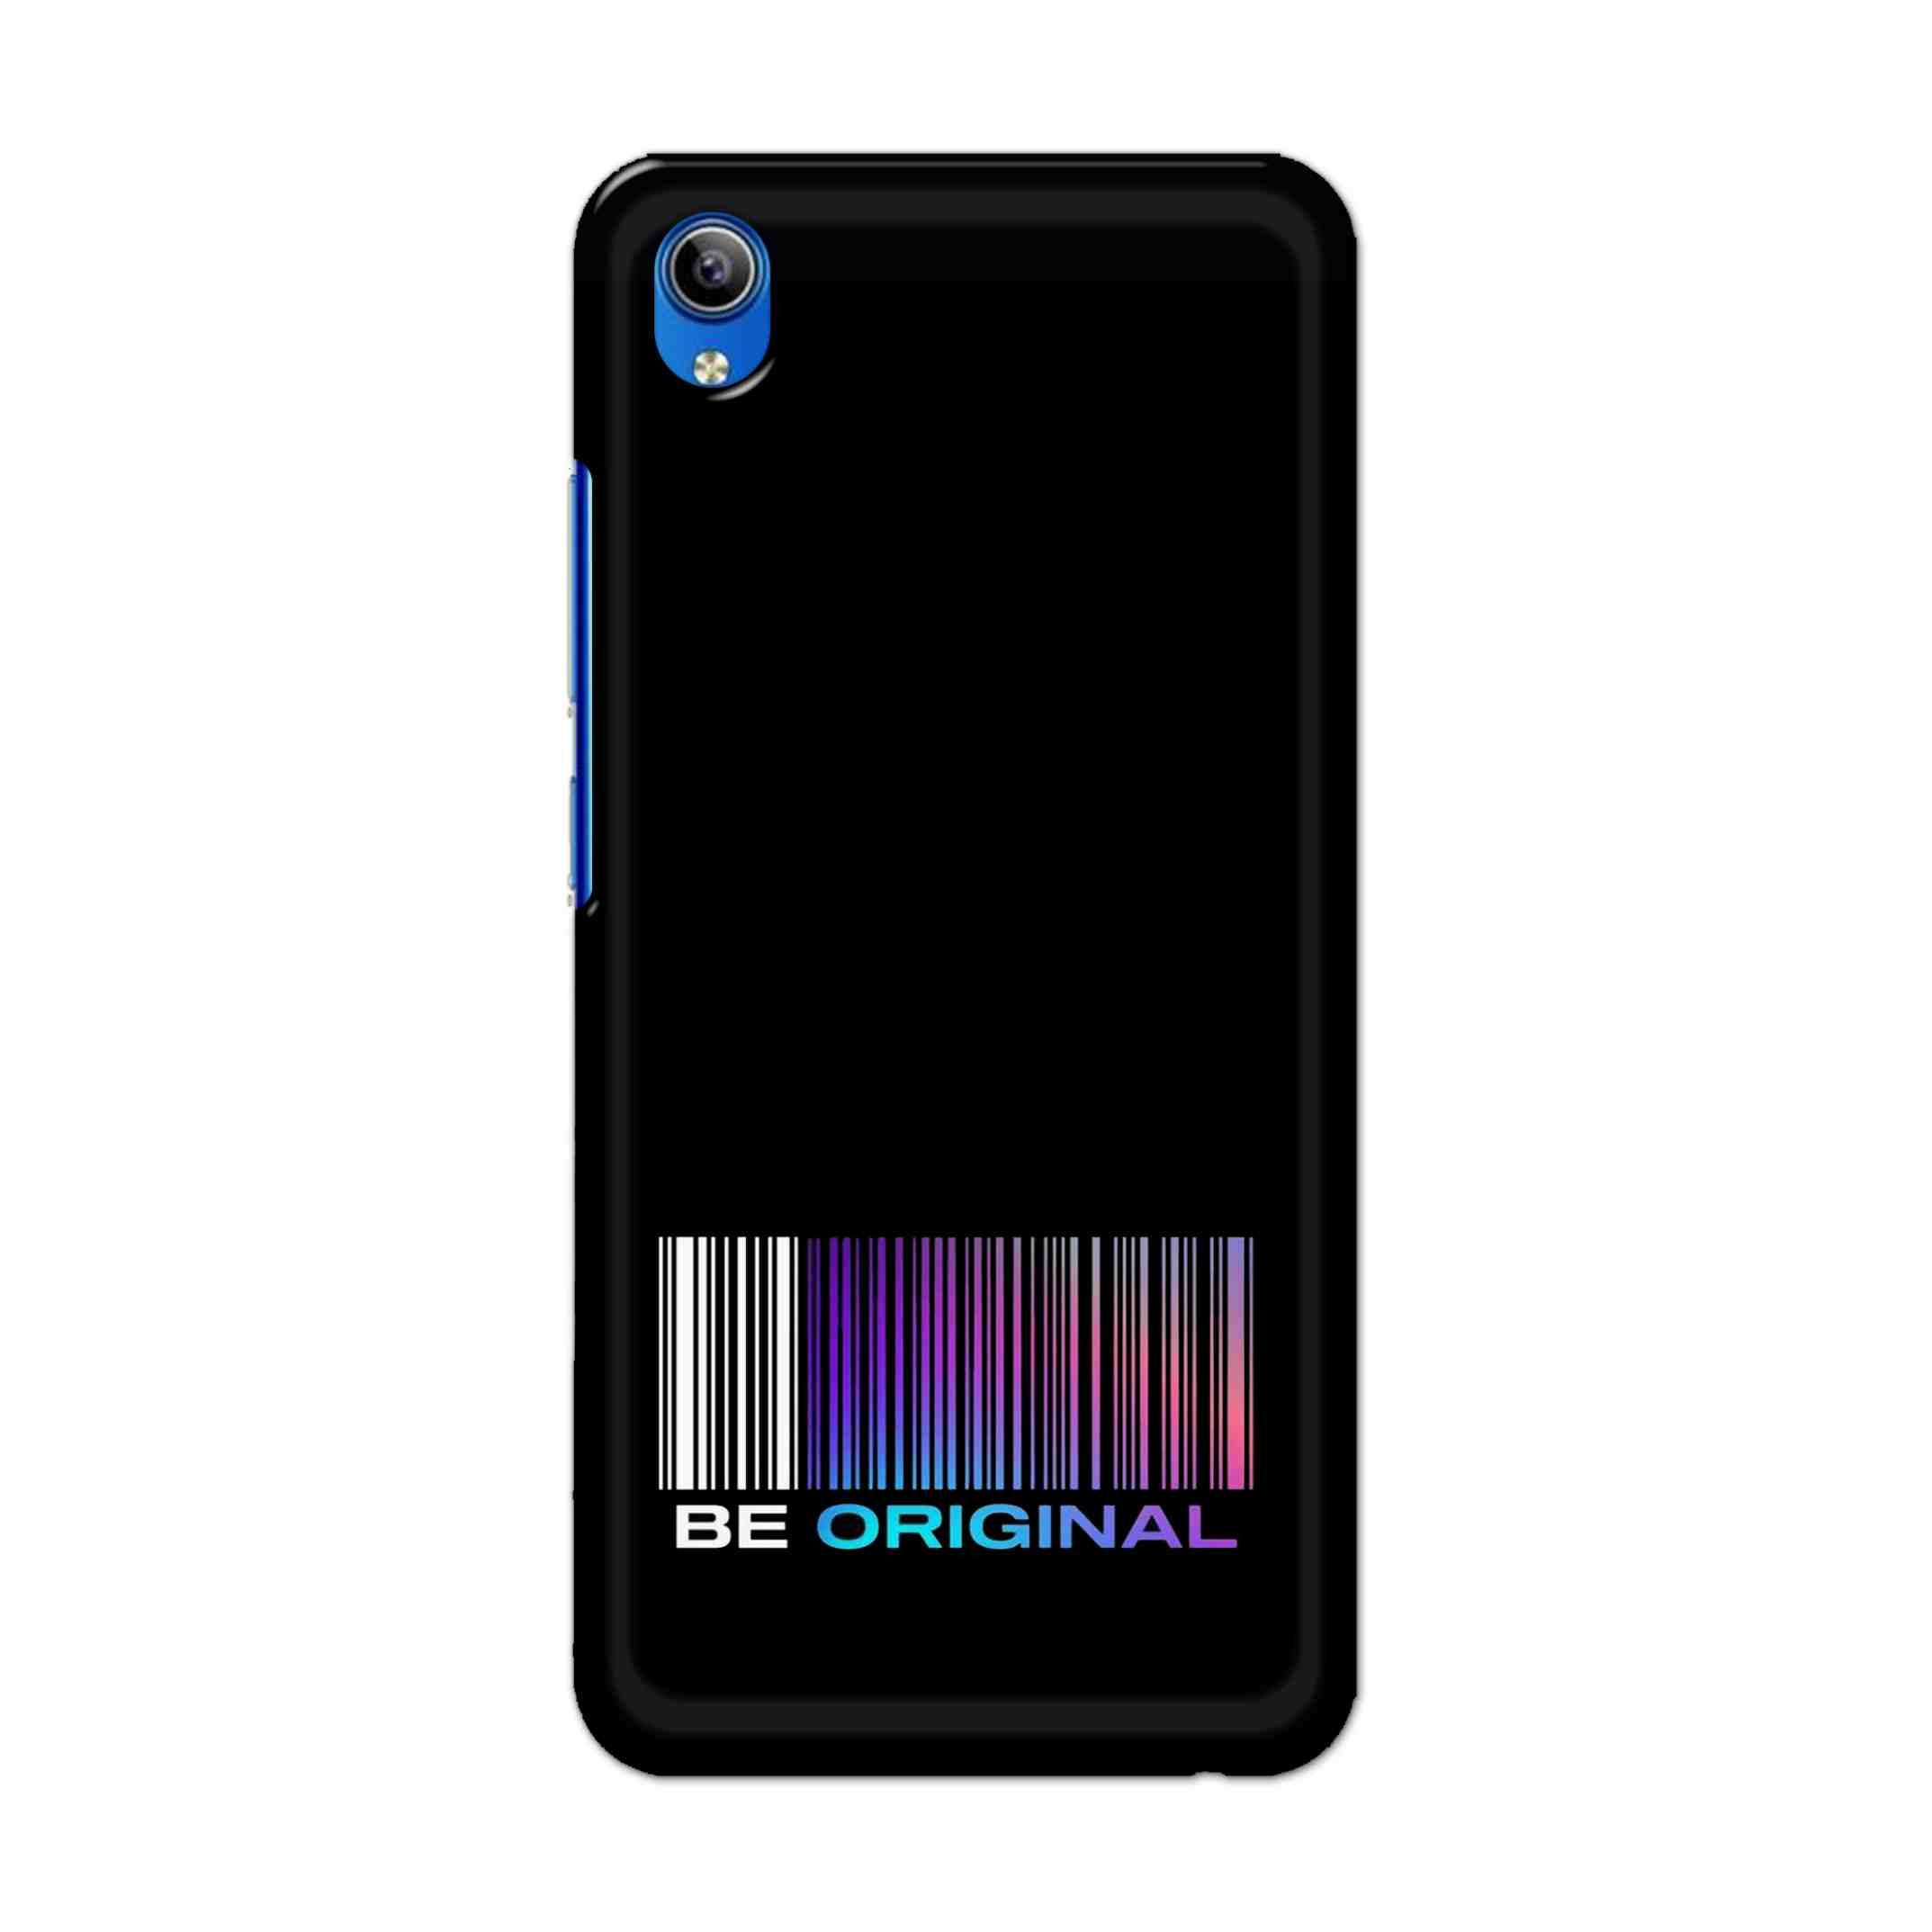 Buy Be Original Hard Back Mobile Phone Case Cover For Vivo Y91i Online